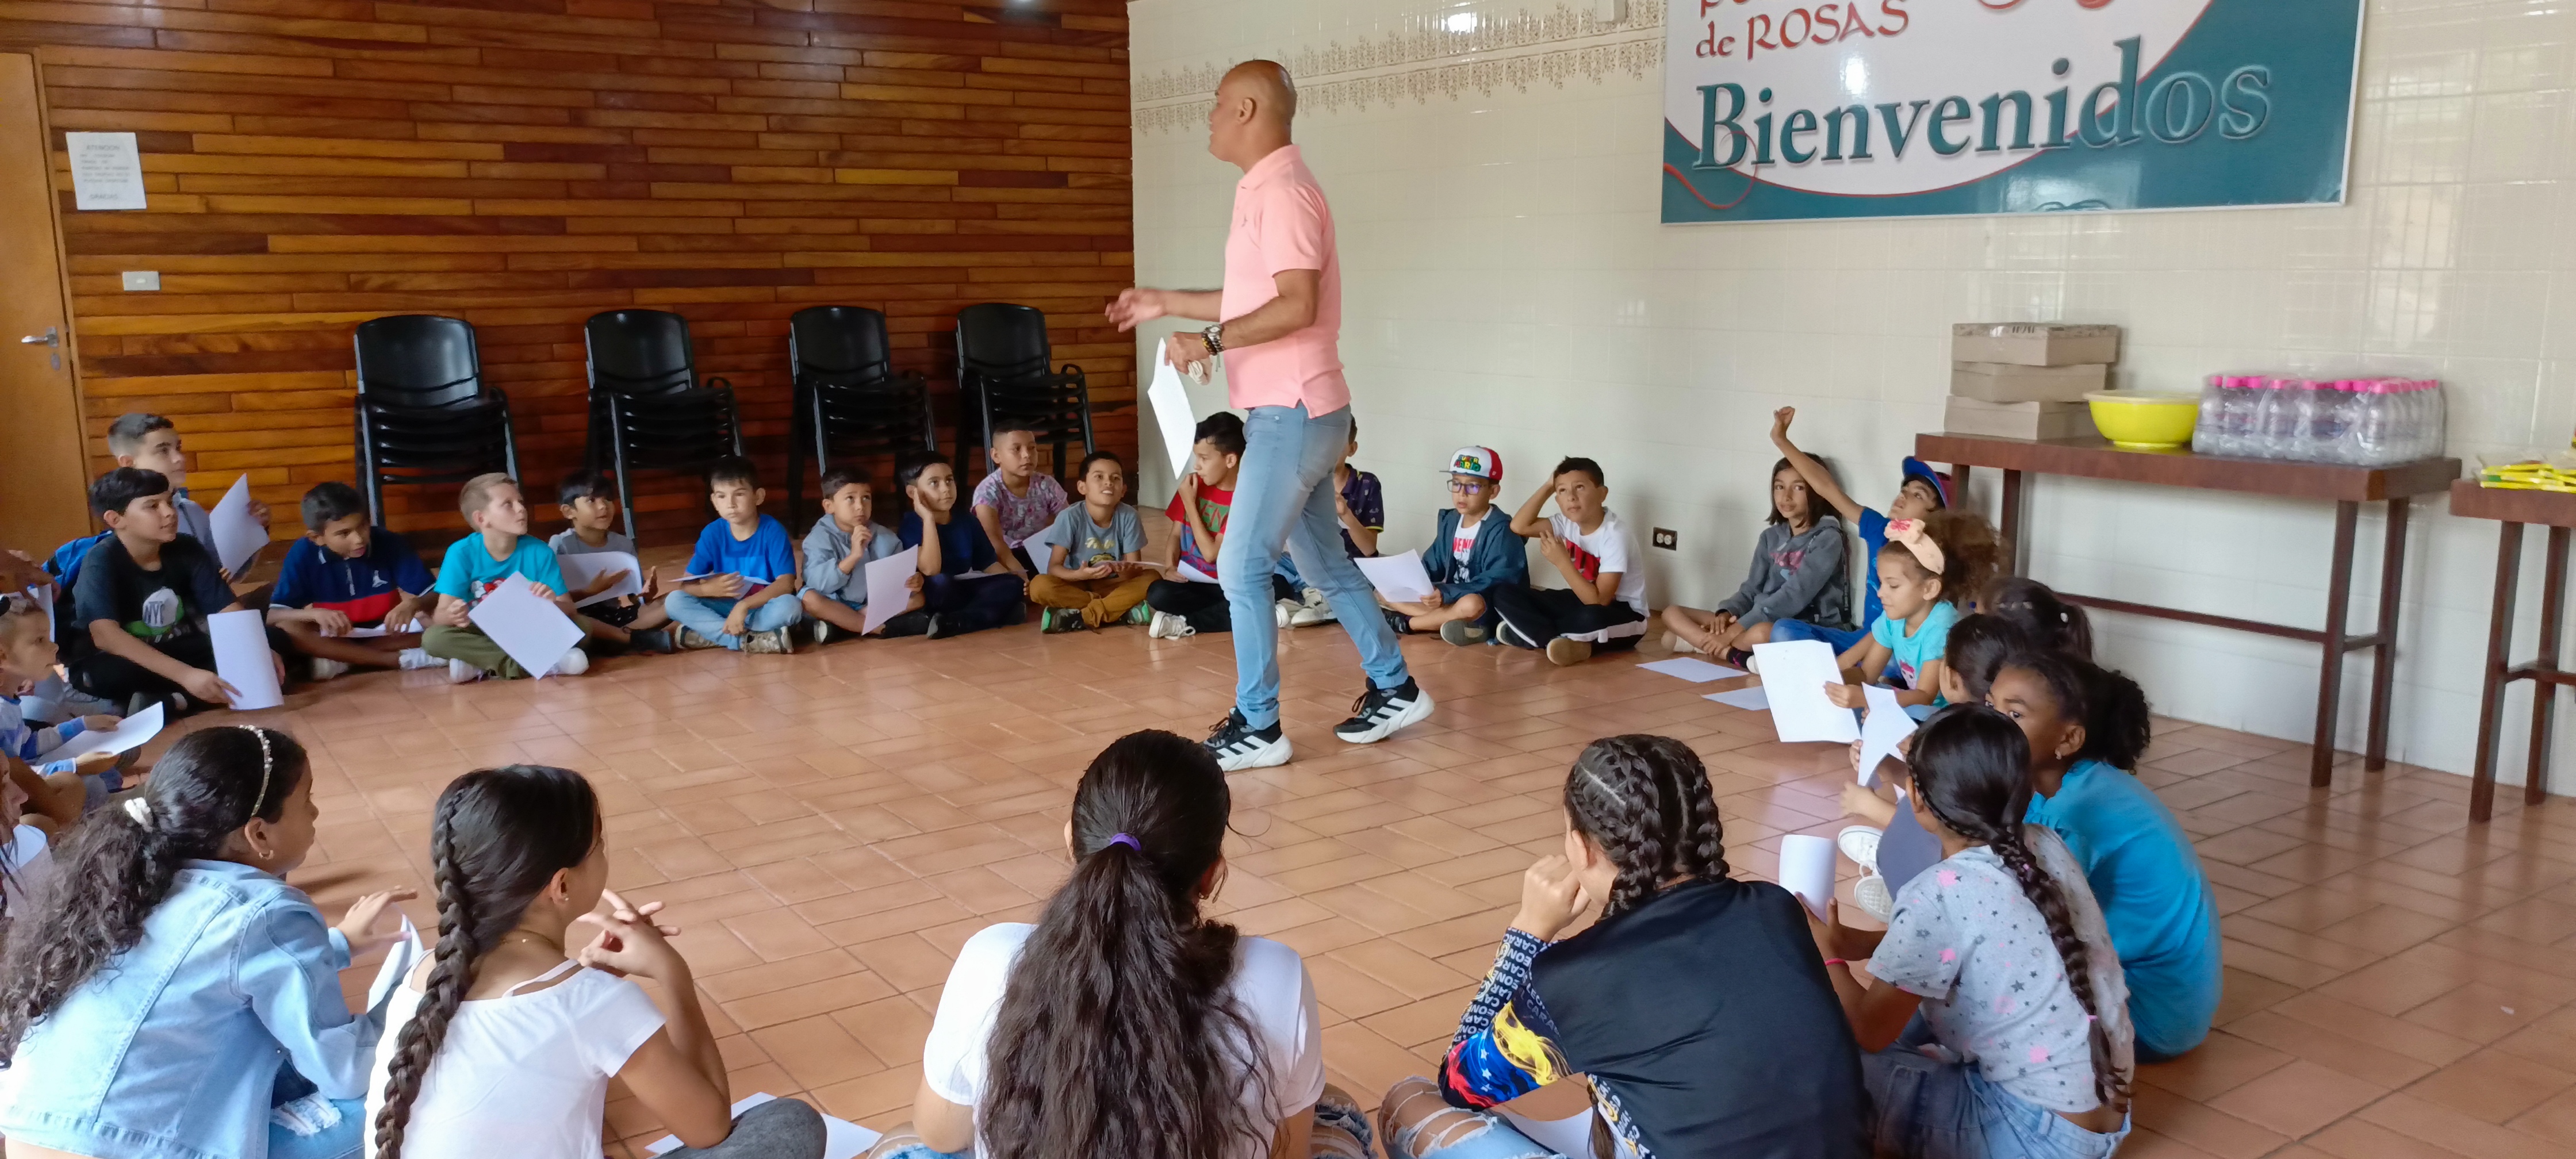 Más de 30 niños de la Escuela de Fútbol de San Pedro participaron en taller gratuito de caricaturas con Pinilla